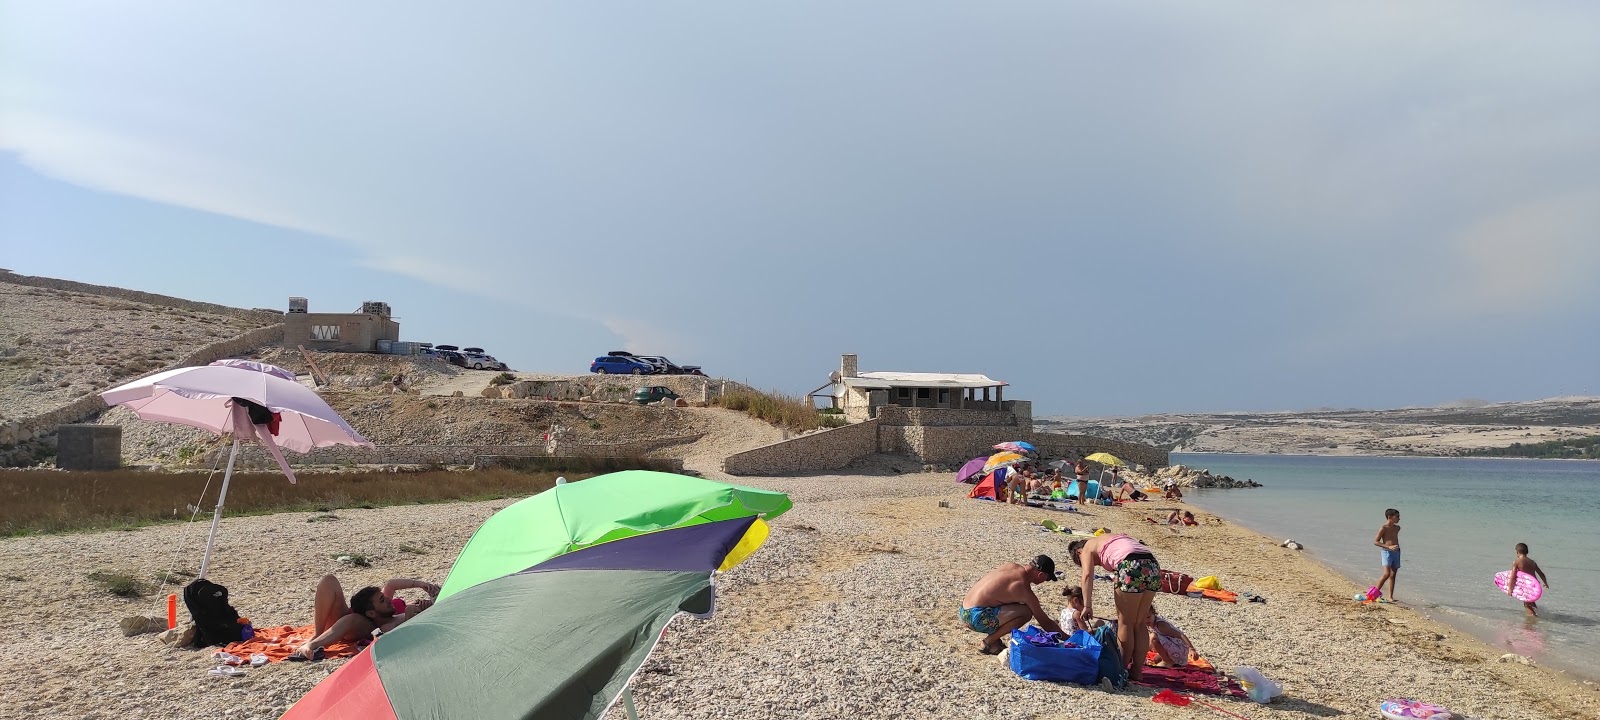 Φωτογραφία του Prnjica beach - δημοφιλές μέρος μεταξύ λάτρεις της χαλάρωσης